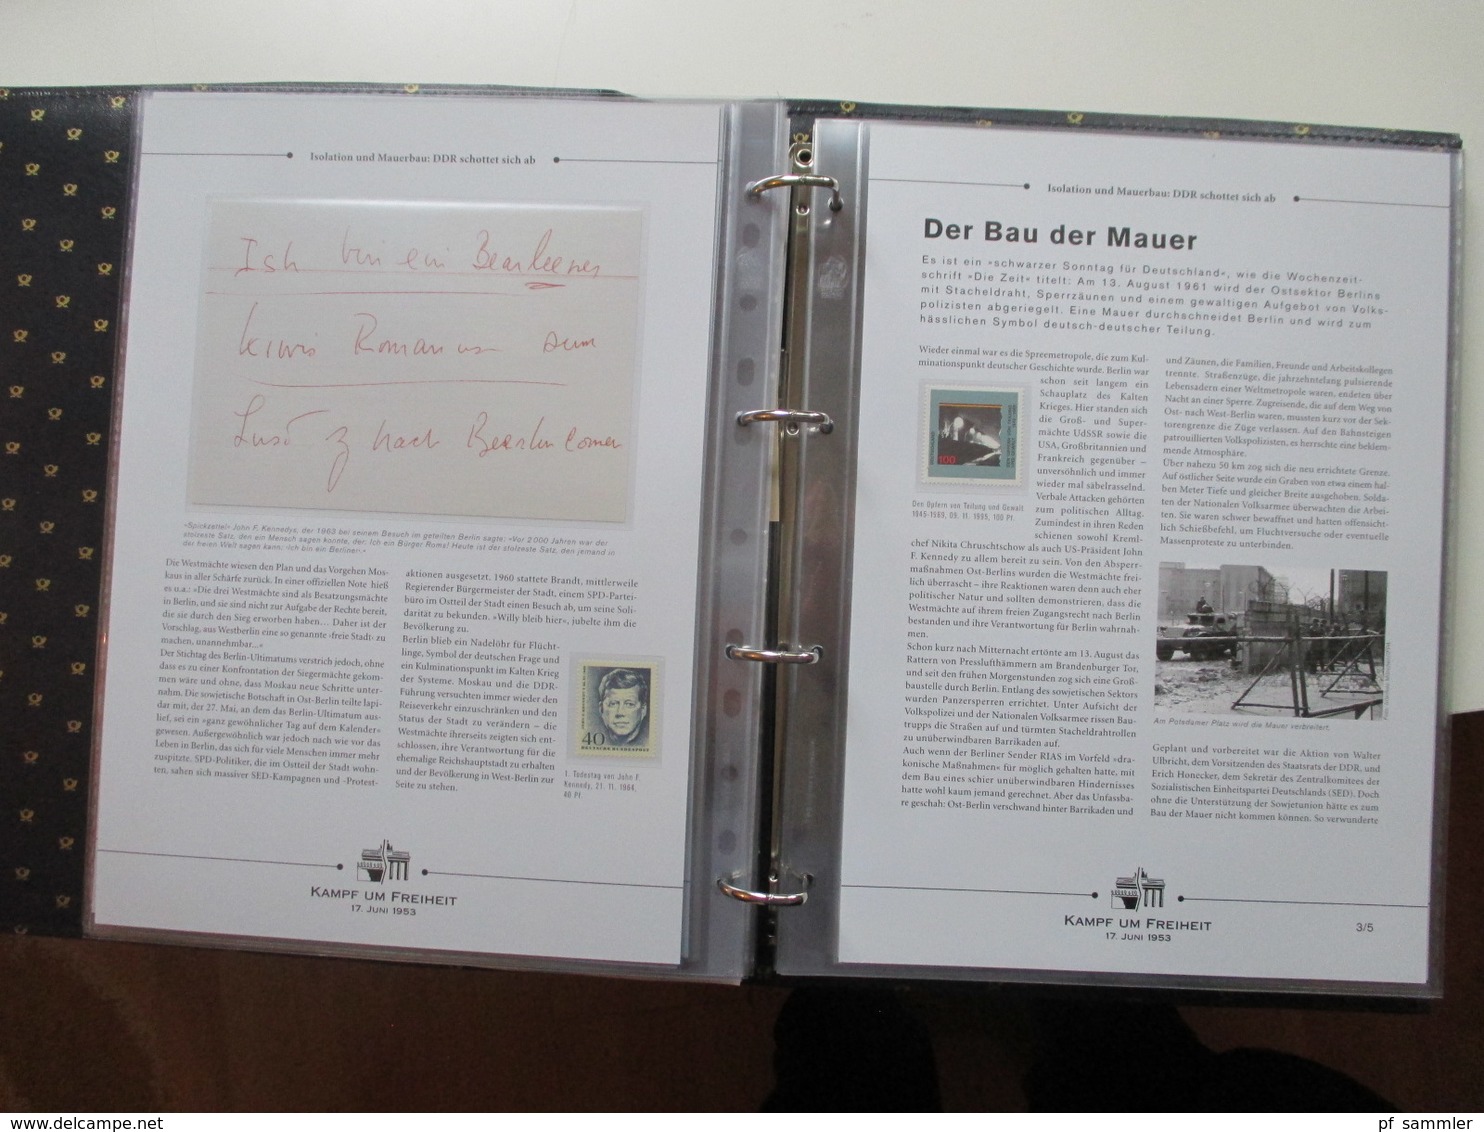 Kampf um Freiheit Vordruck Album / Versandsendungen der Deutschen Post. Im Schuber! Mit Berlin Nr. 110 / 111 **